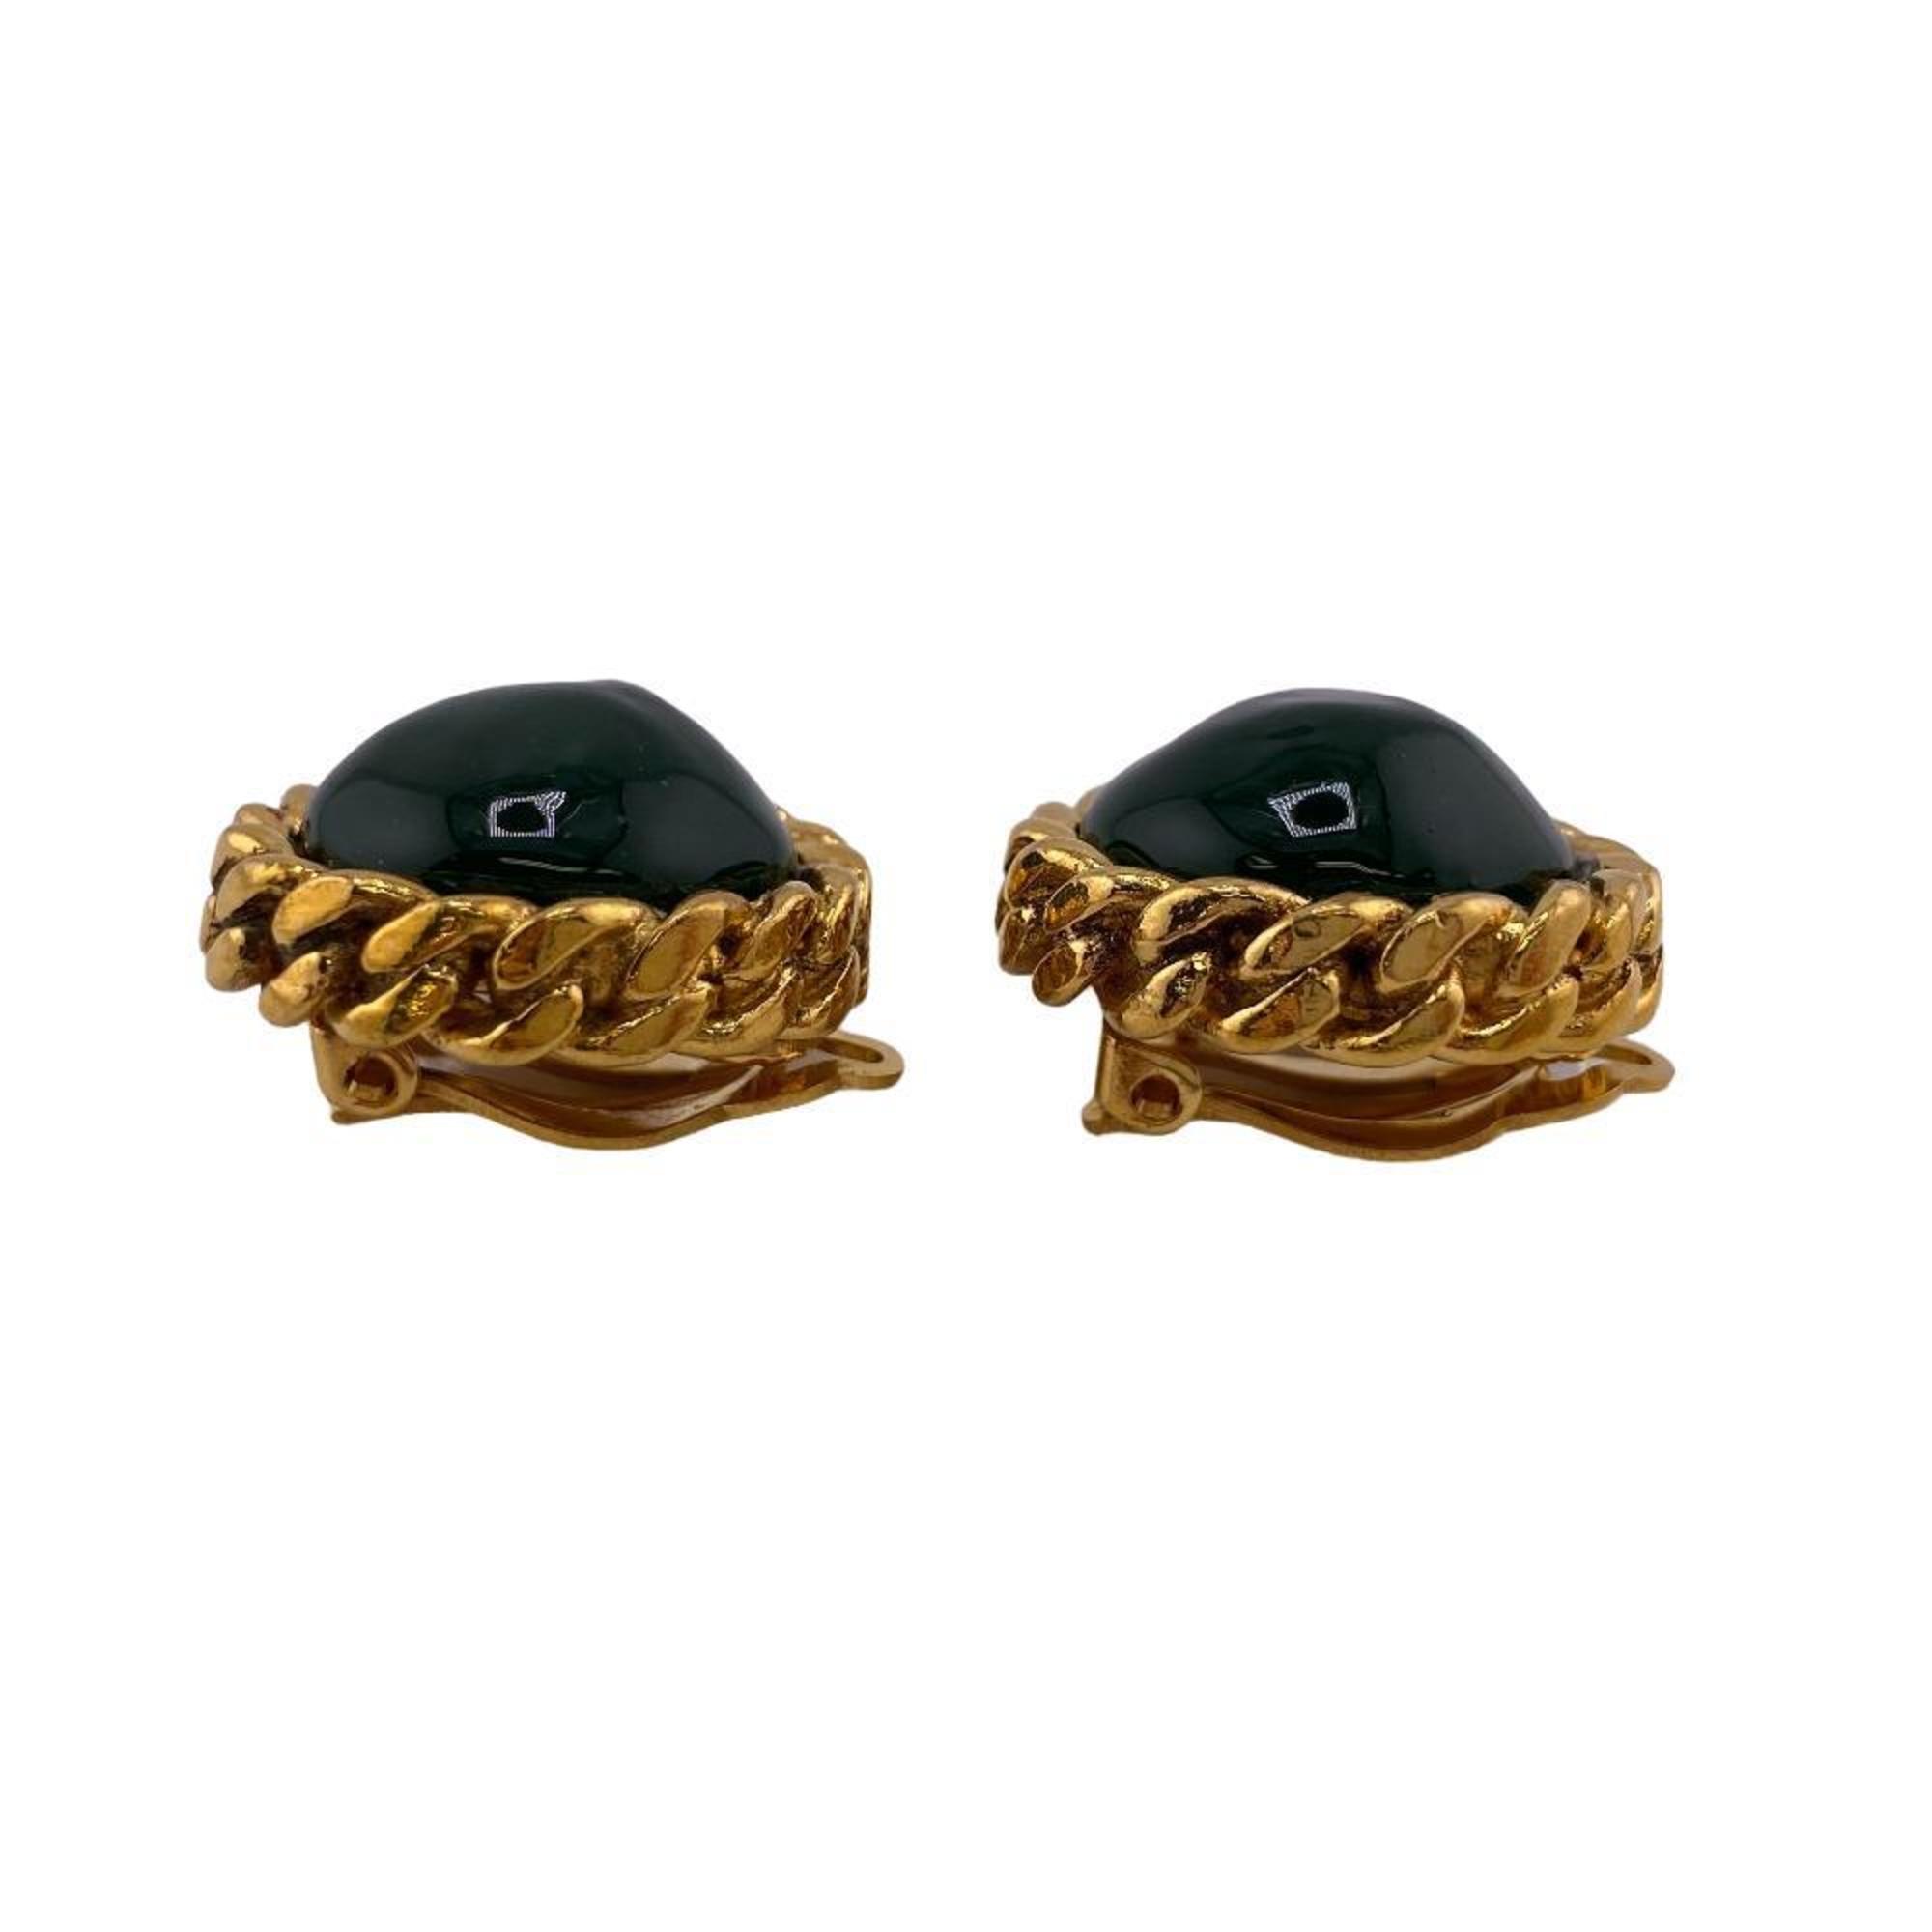 CHANEL Gripore 2419 Colored Stone Earrings Green Men's Women's